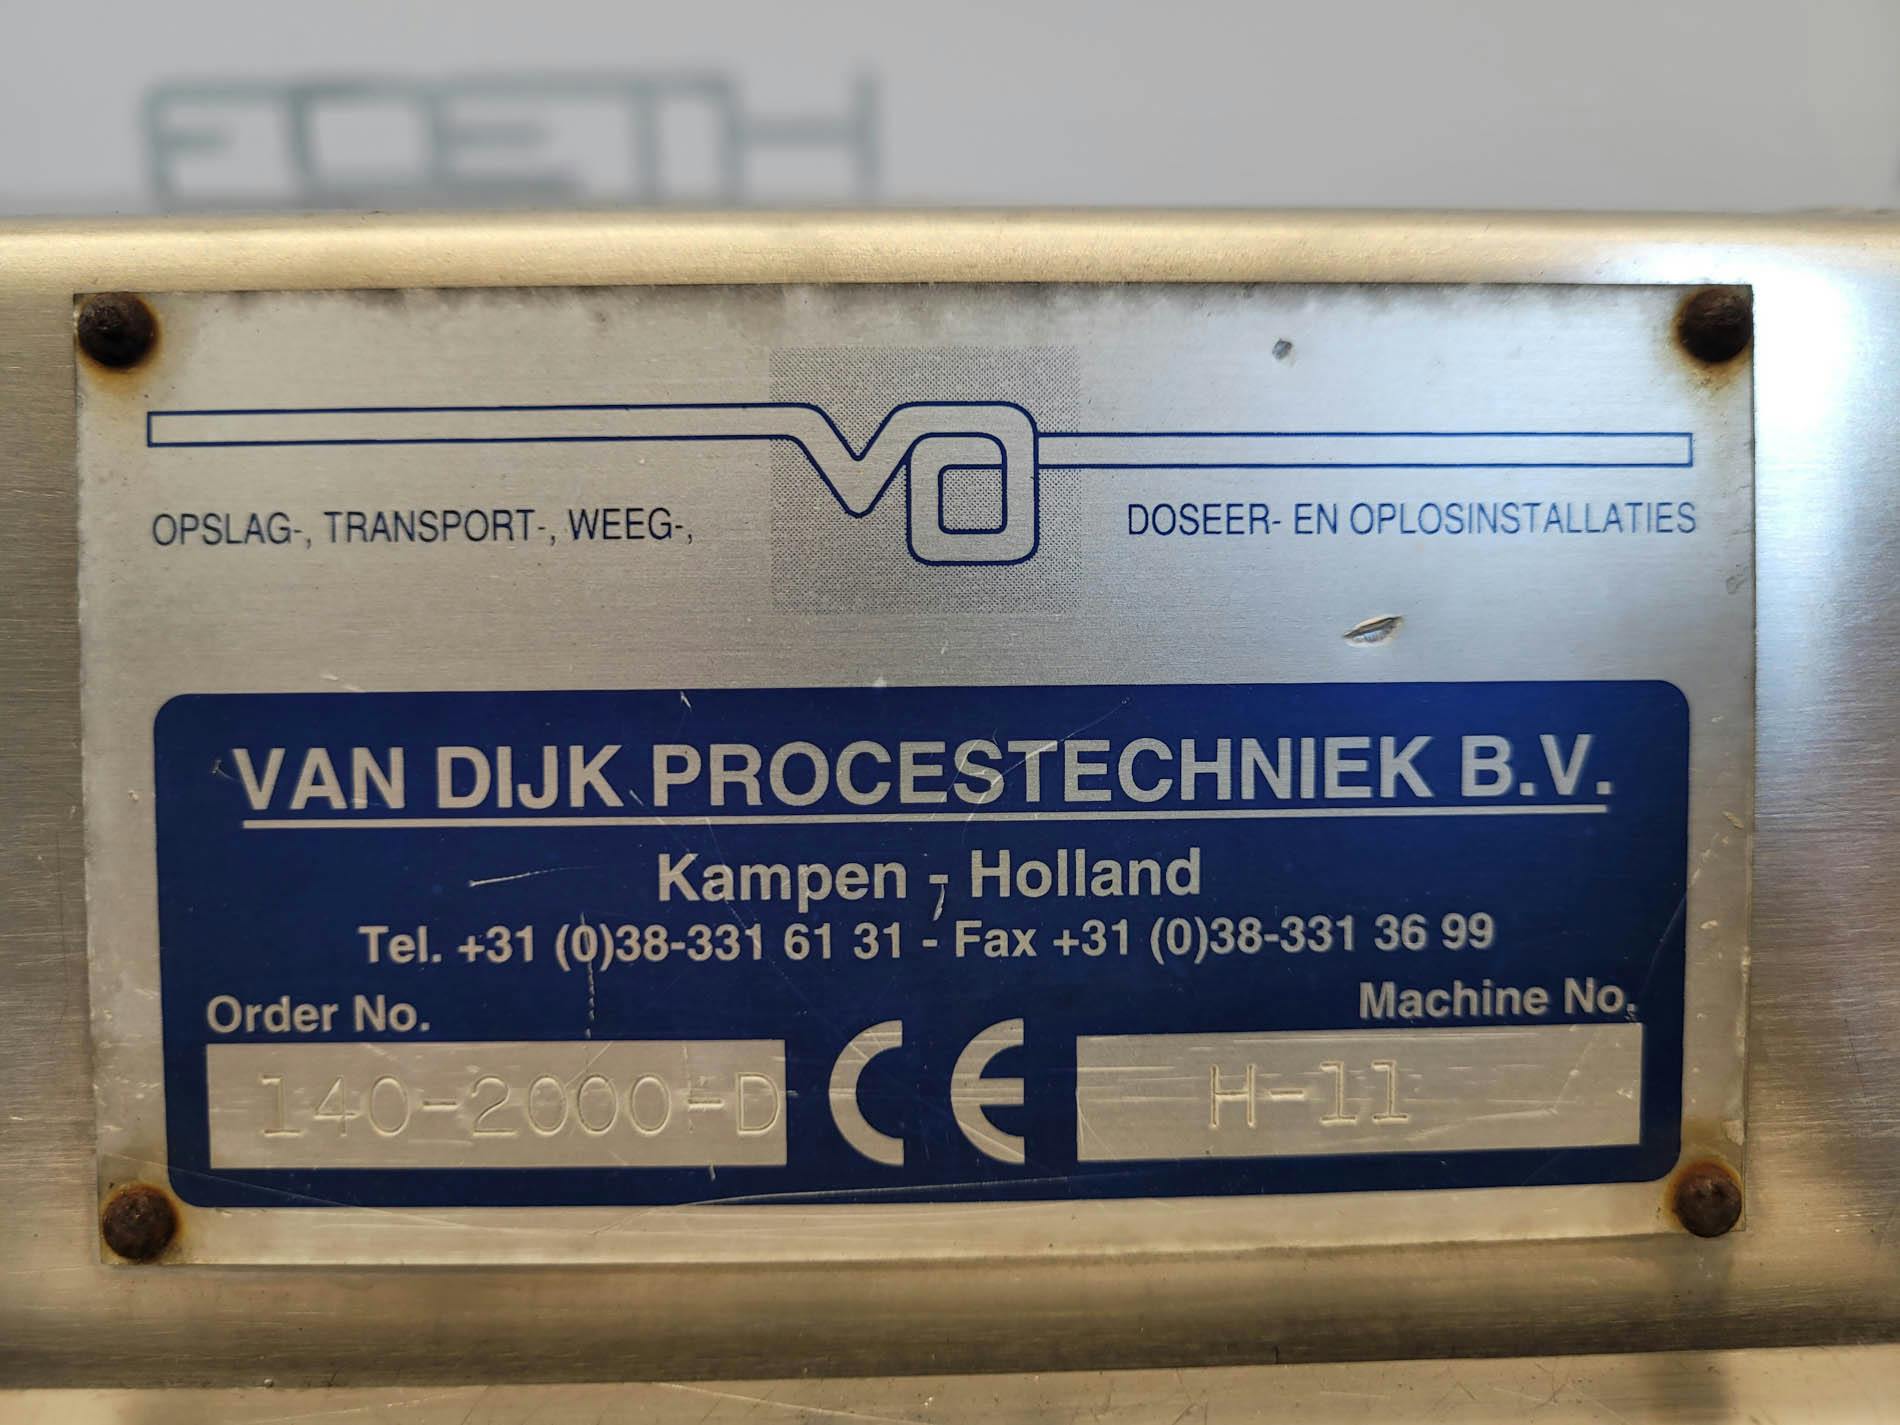 Van Dijk Procestechniek H-11 - Bag dump station - image 14